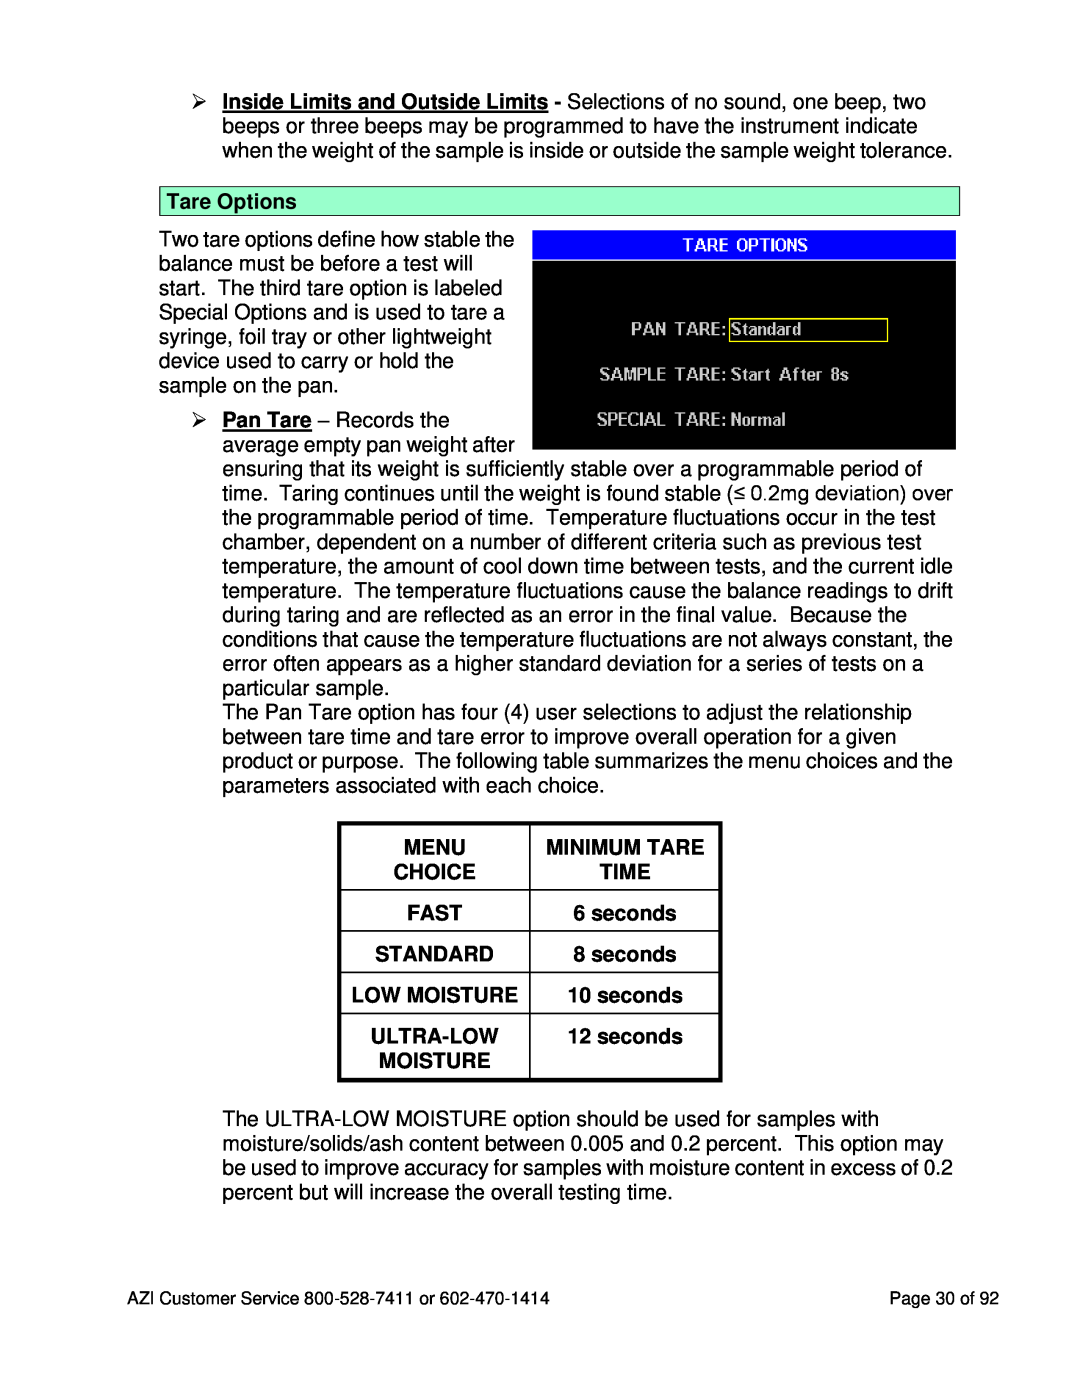 Arizona MAX-5000XL user manual Tare Options, Menu, Minimum Tare, Time, Fast, Low Moisture, Ultra-Low 